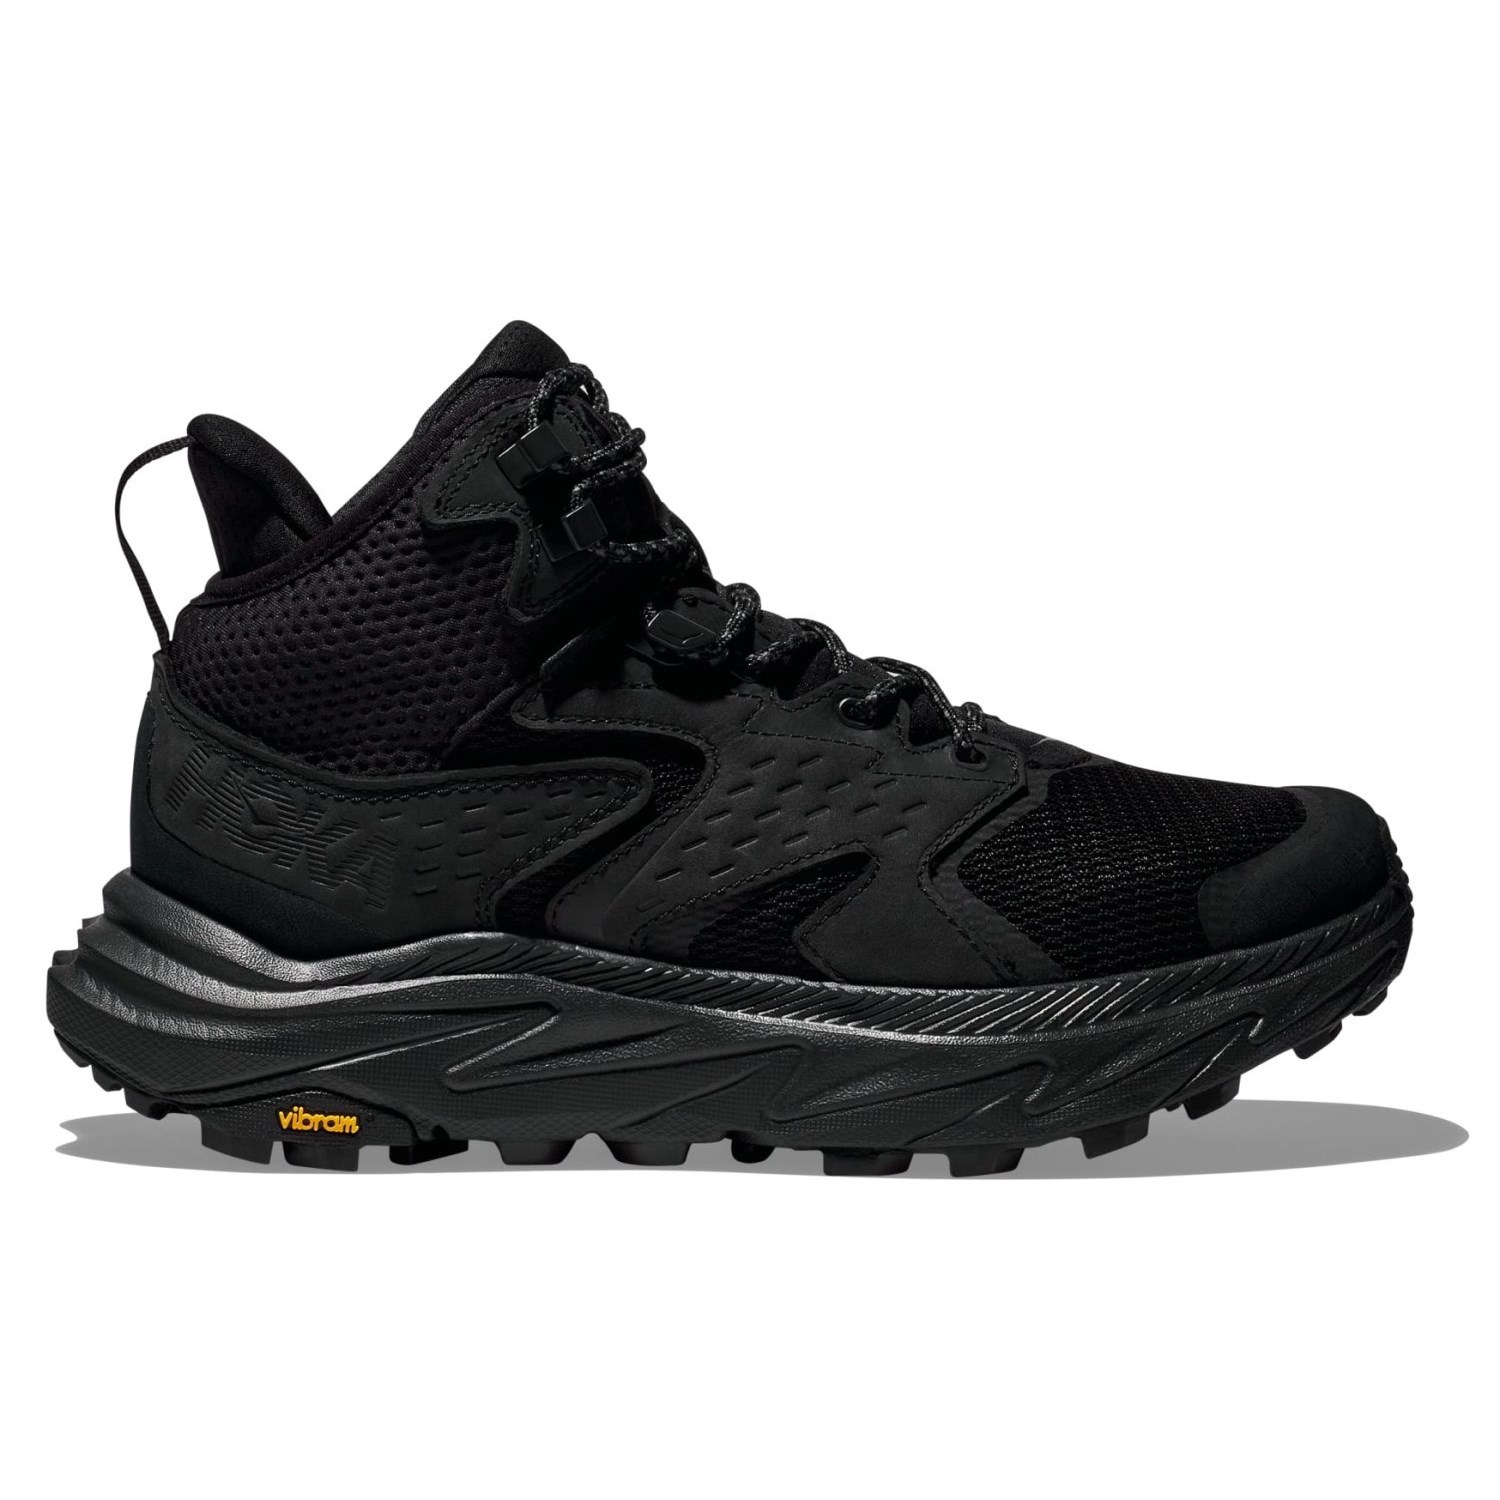 Hoka Anacapa 2 Mid GTX - Mens Hiking Shoes - Black/Black | Sportitude